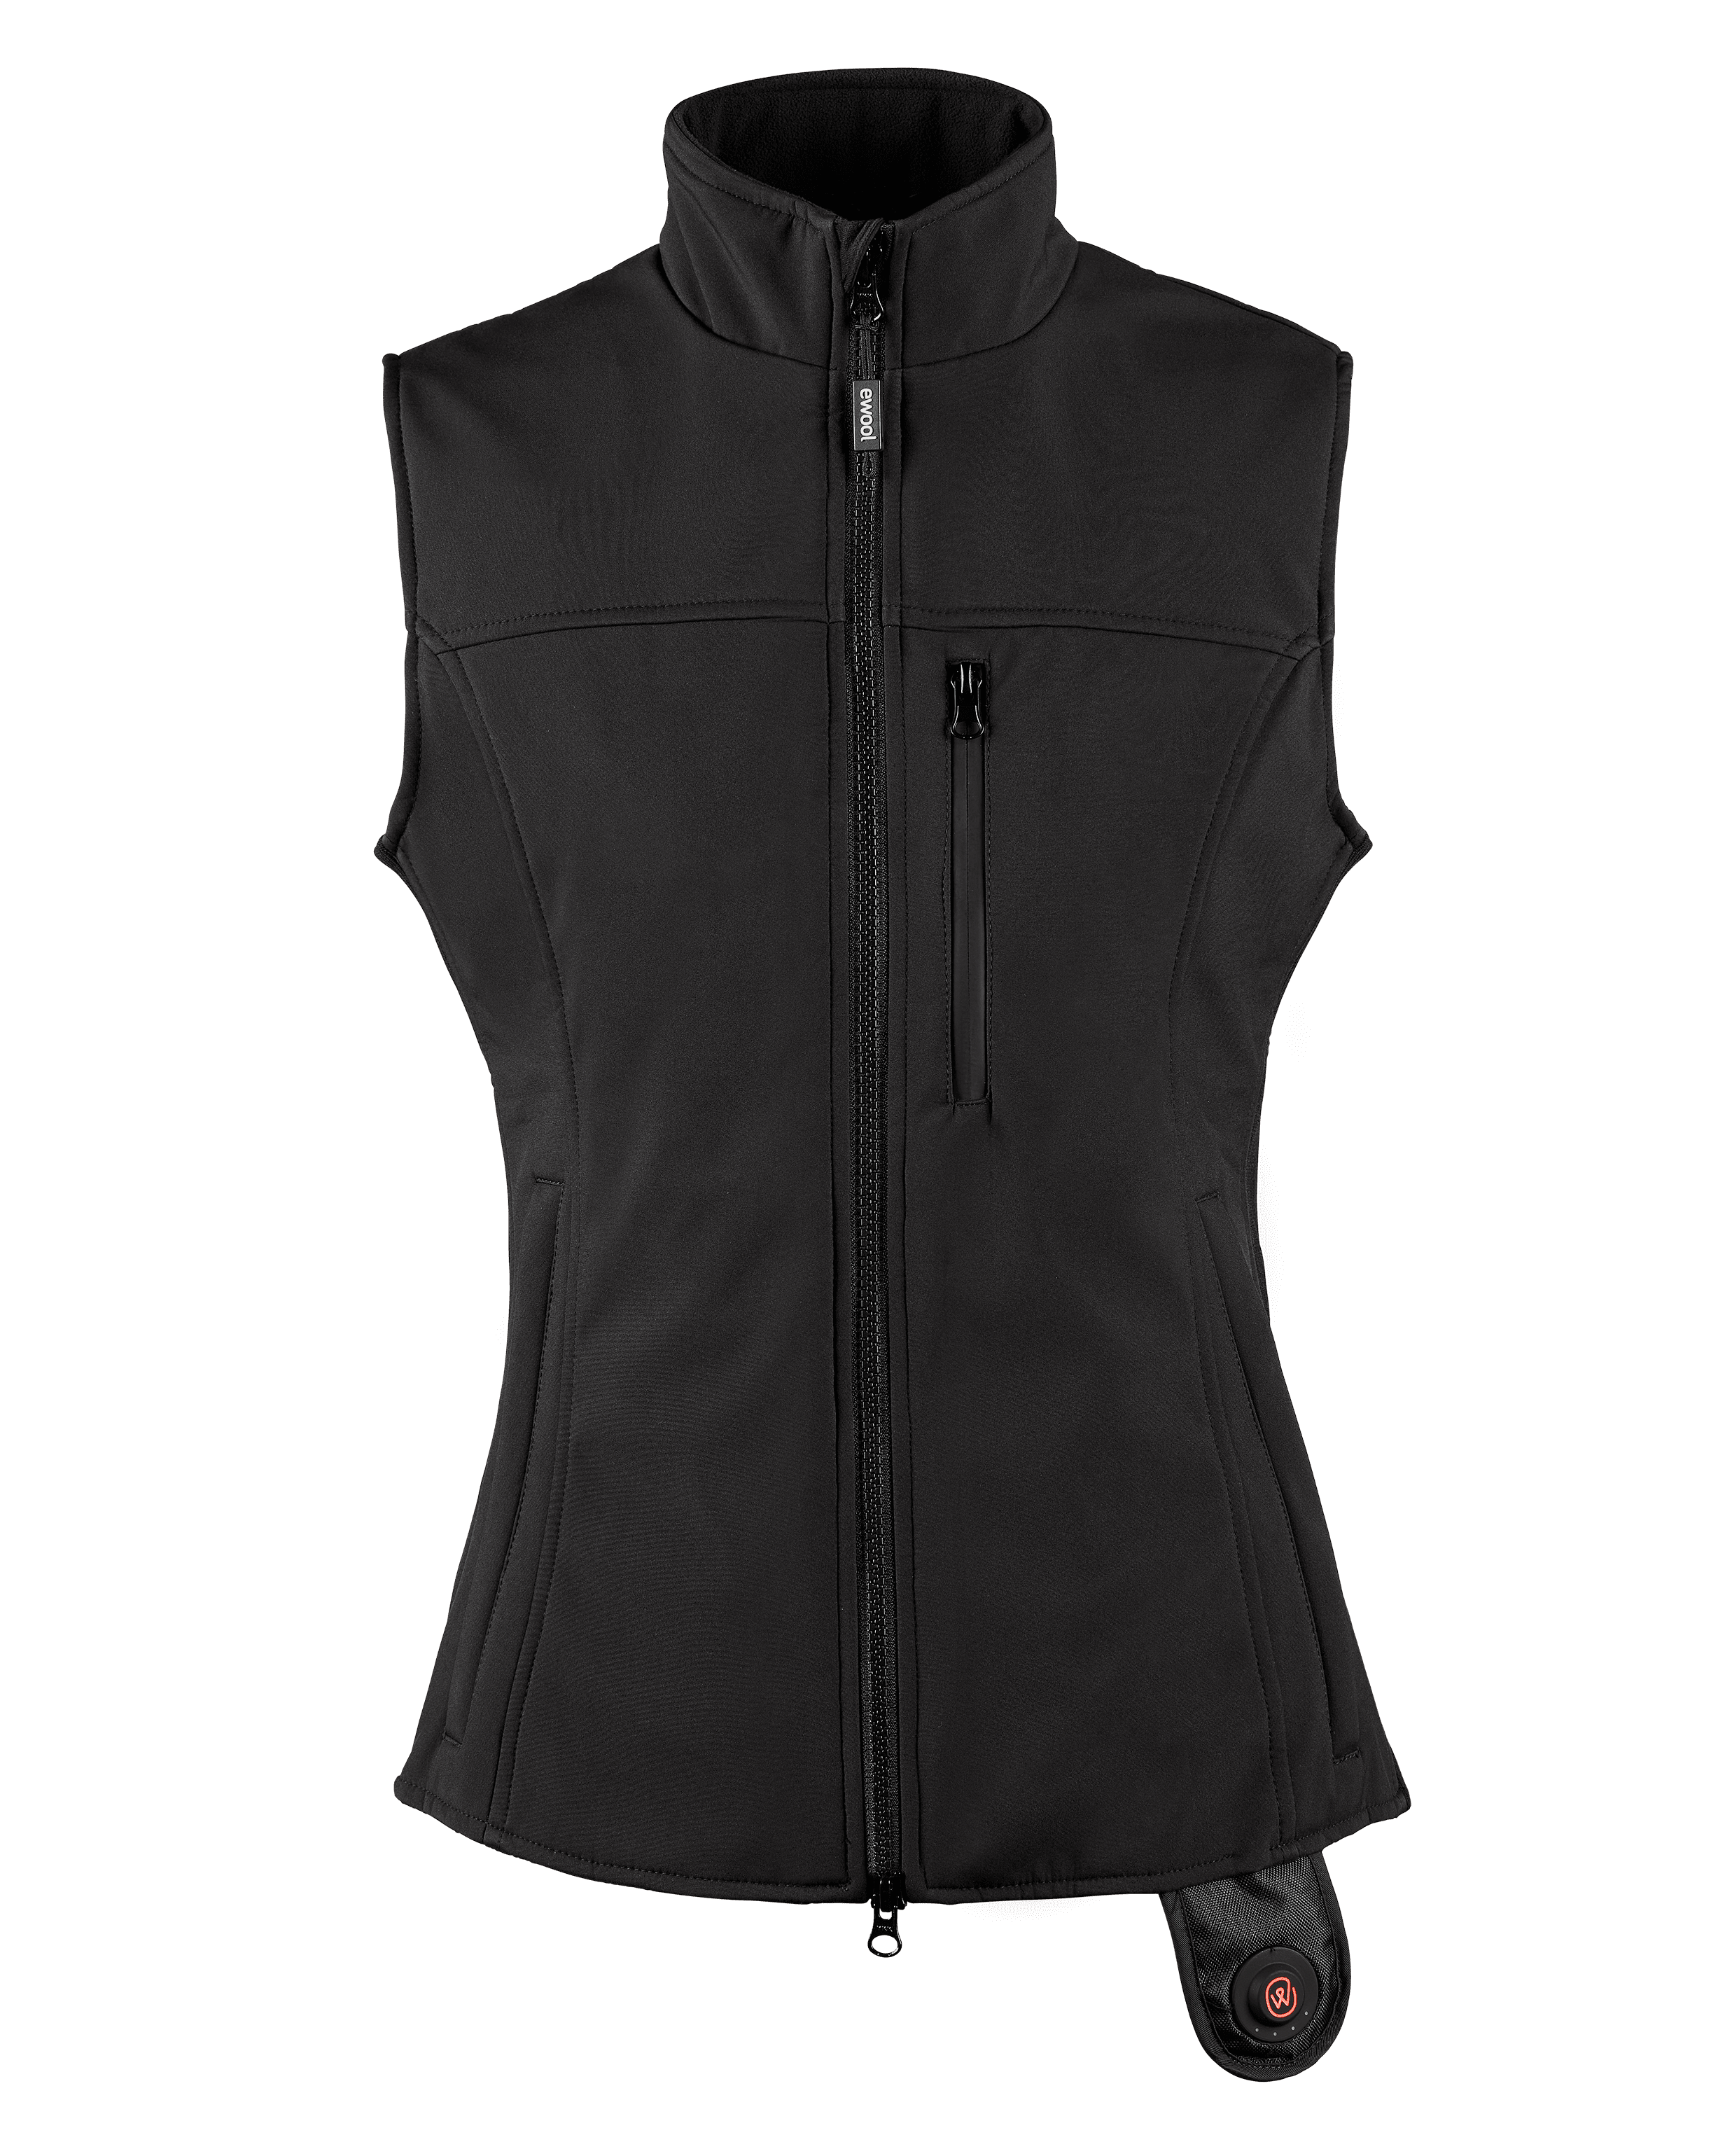 PRO+ Heated Vest for Women (Open Box)